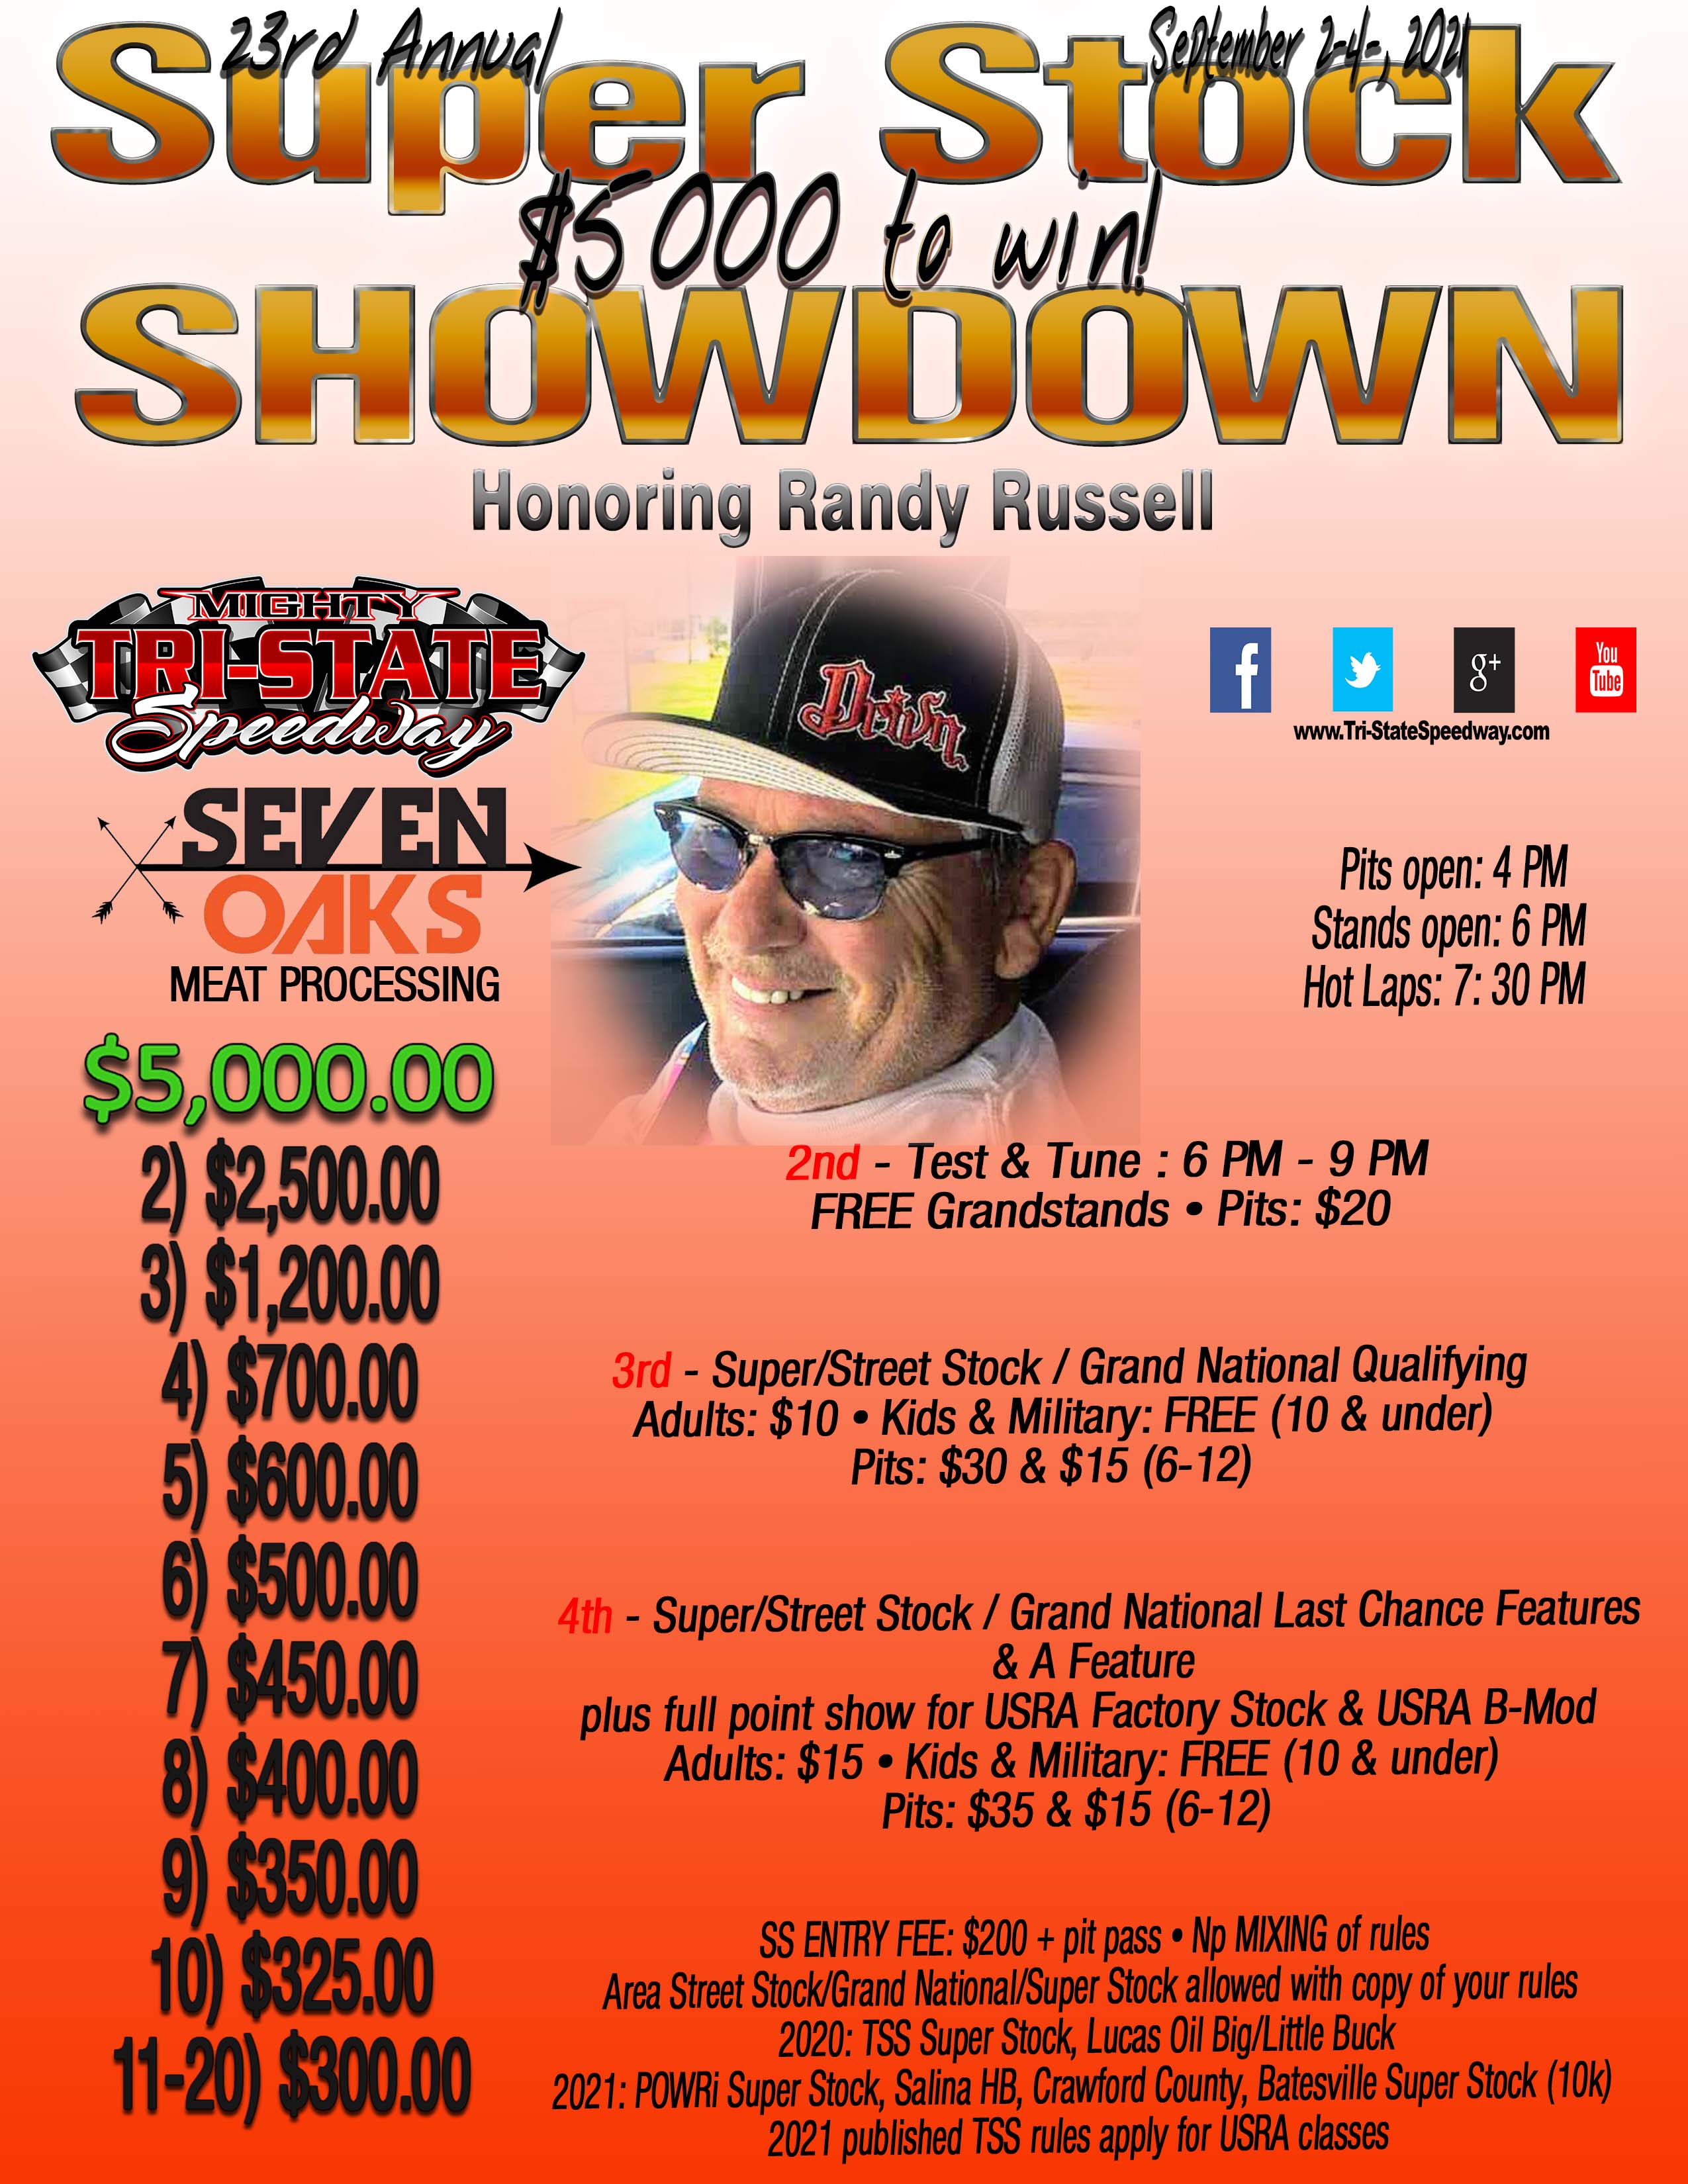 23rd Annual $5,000 to win Super Stock Showdown